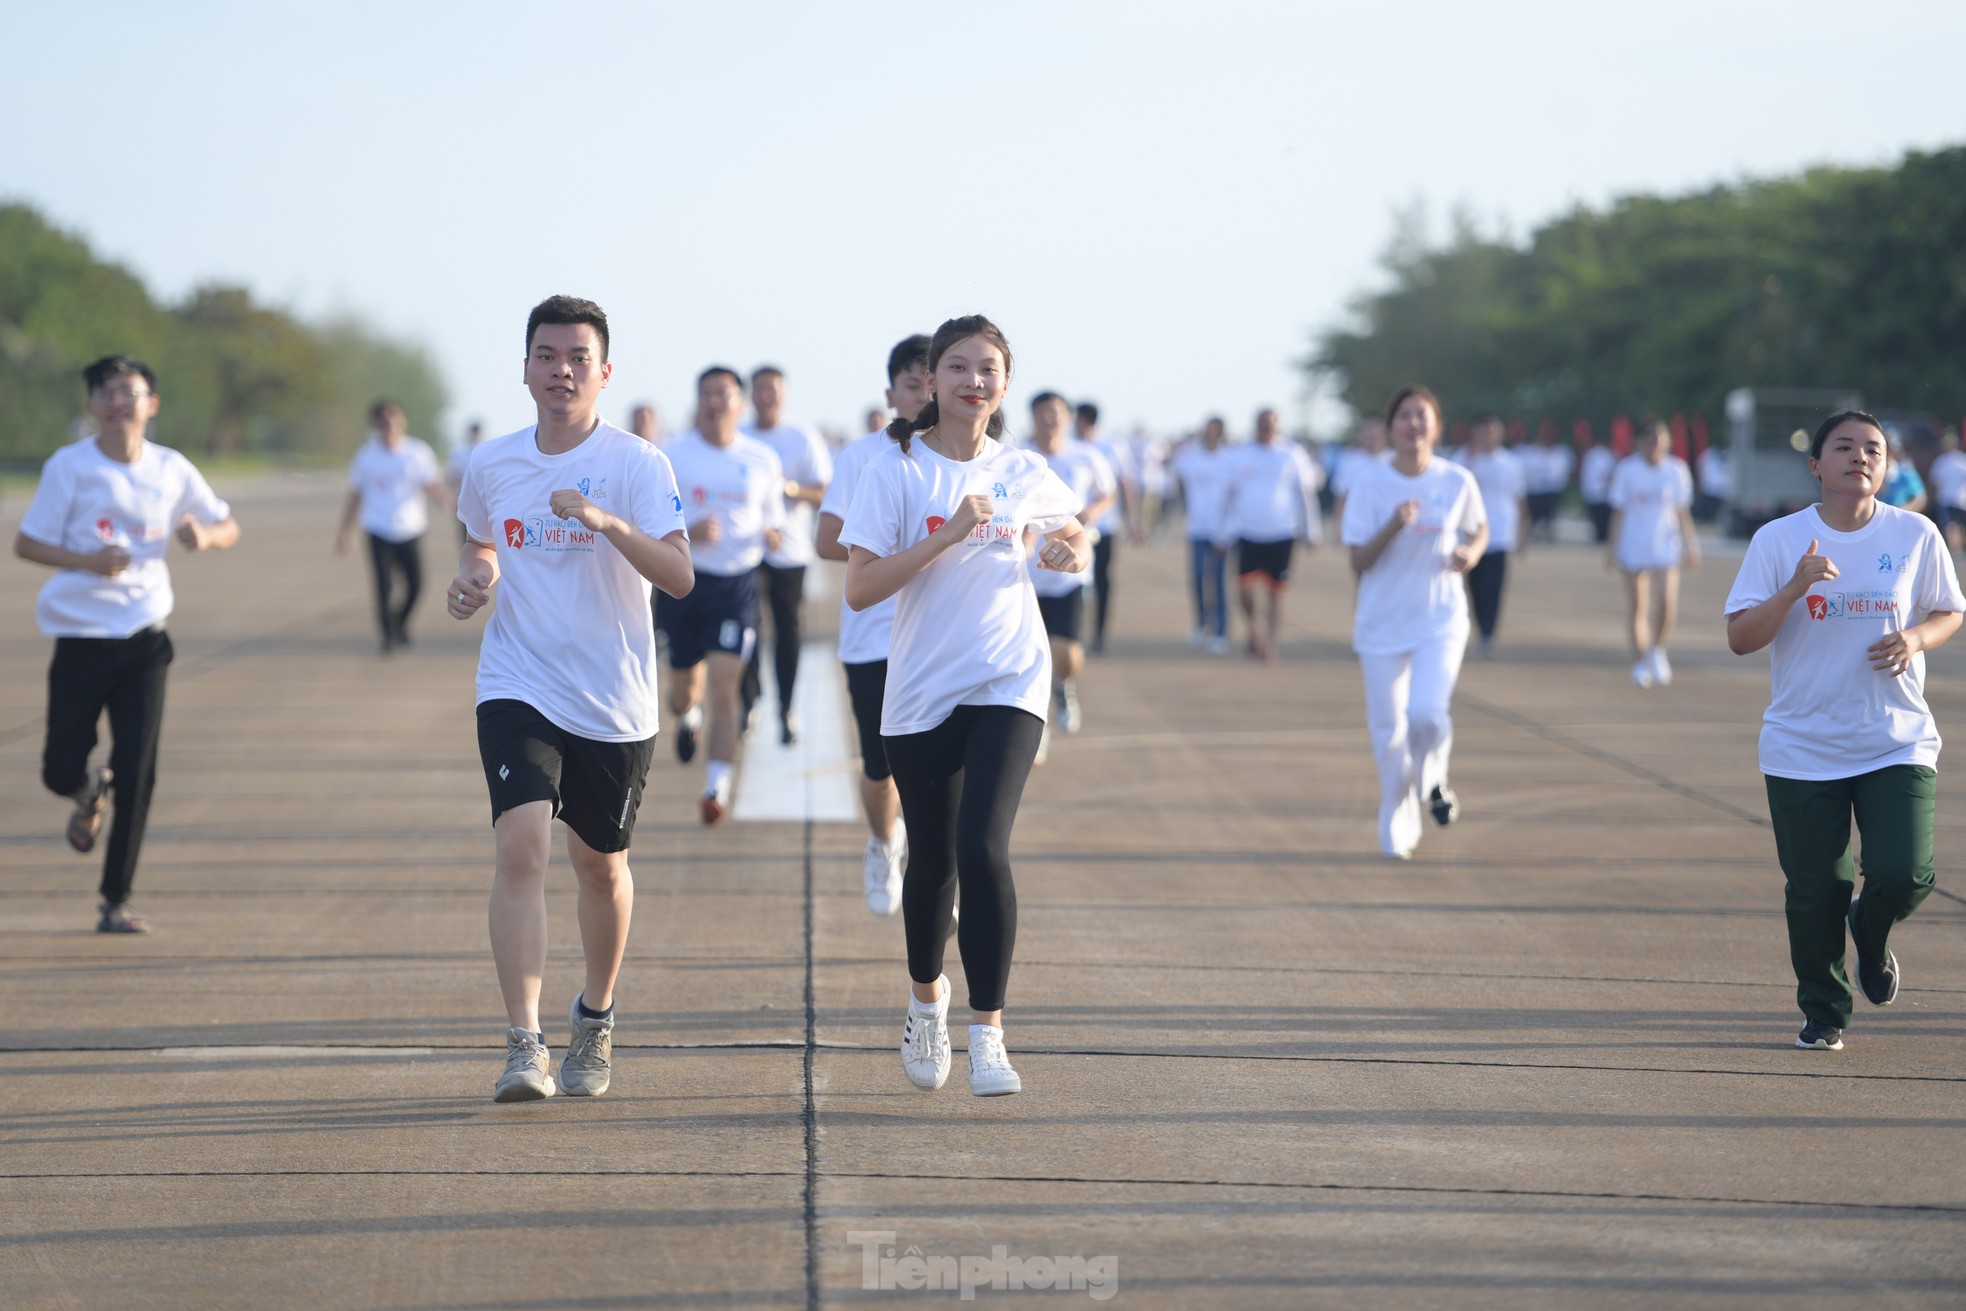 Hoa hậu Đỗ Thị Hà, Đoàn Thiên Ân cùng hơn 200 sinh viên tham gia giải chạy ở Trường Sa ảnh 5